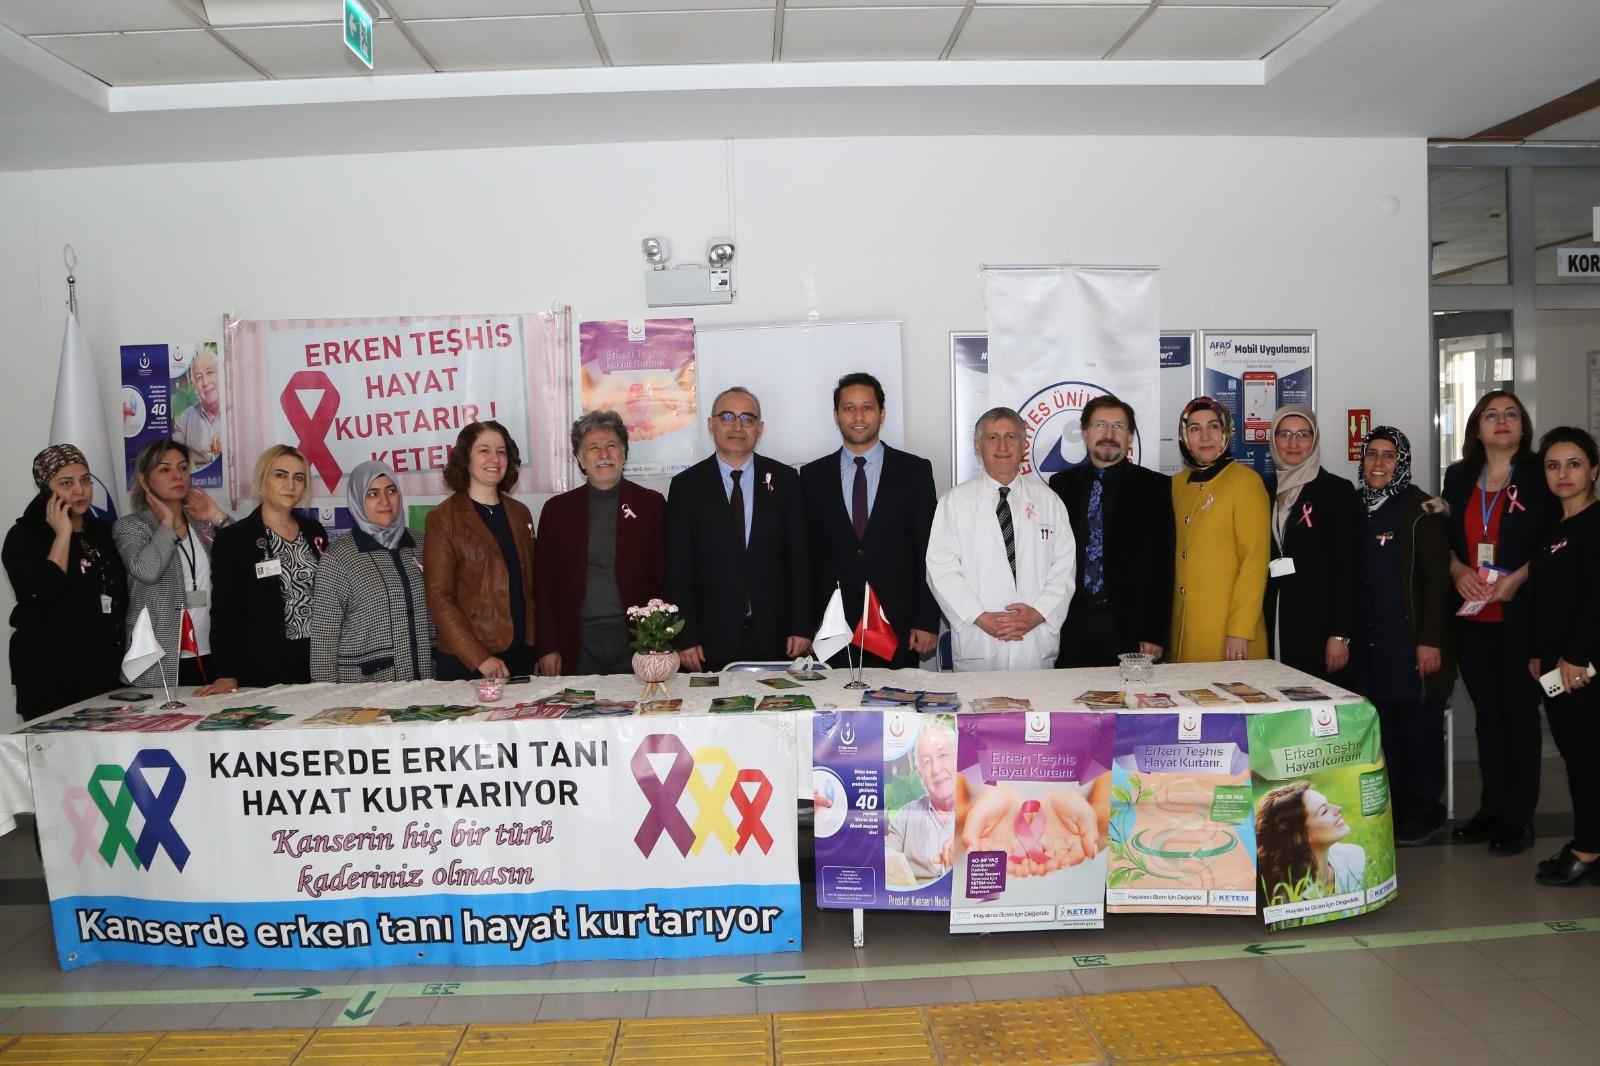 ERÜ Hastanelerinde, “1-7 Nisan Kanser Haftası” Nedeniyle Farkındalık Standı Açıldı